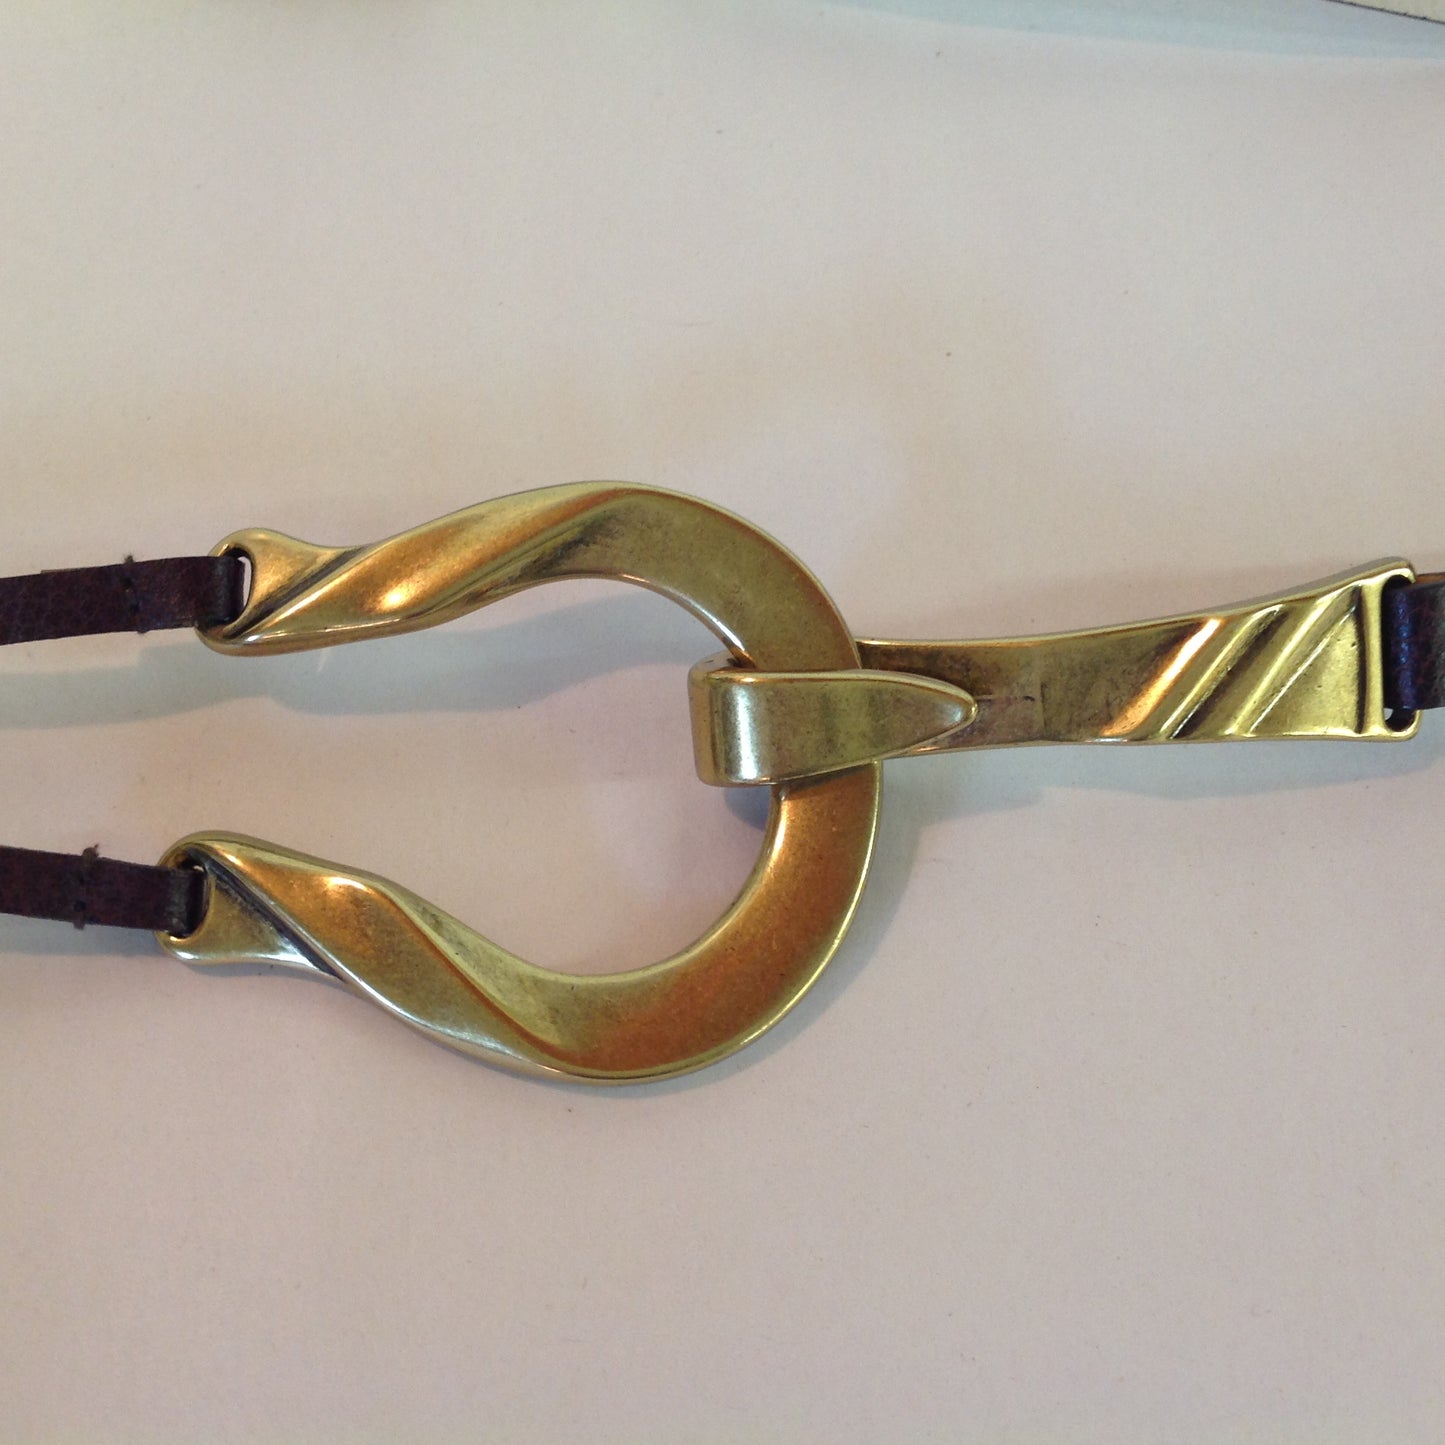 Vintage Dark Brown Chico's Leather Bridle Hoop Style Women's M/L Hook Hoop Closure Belt 22